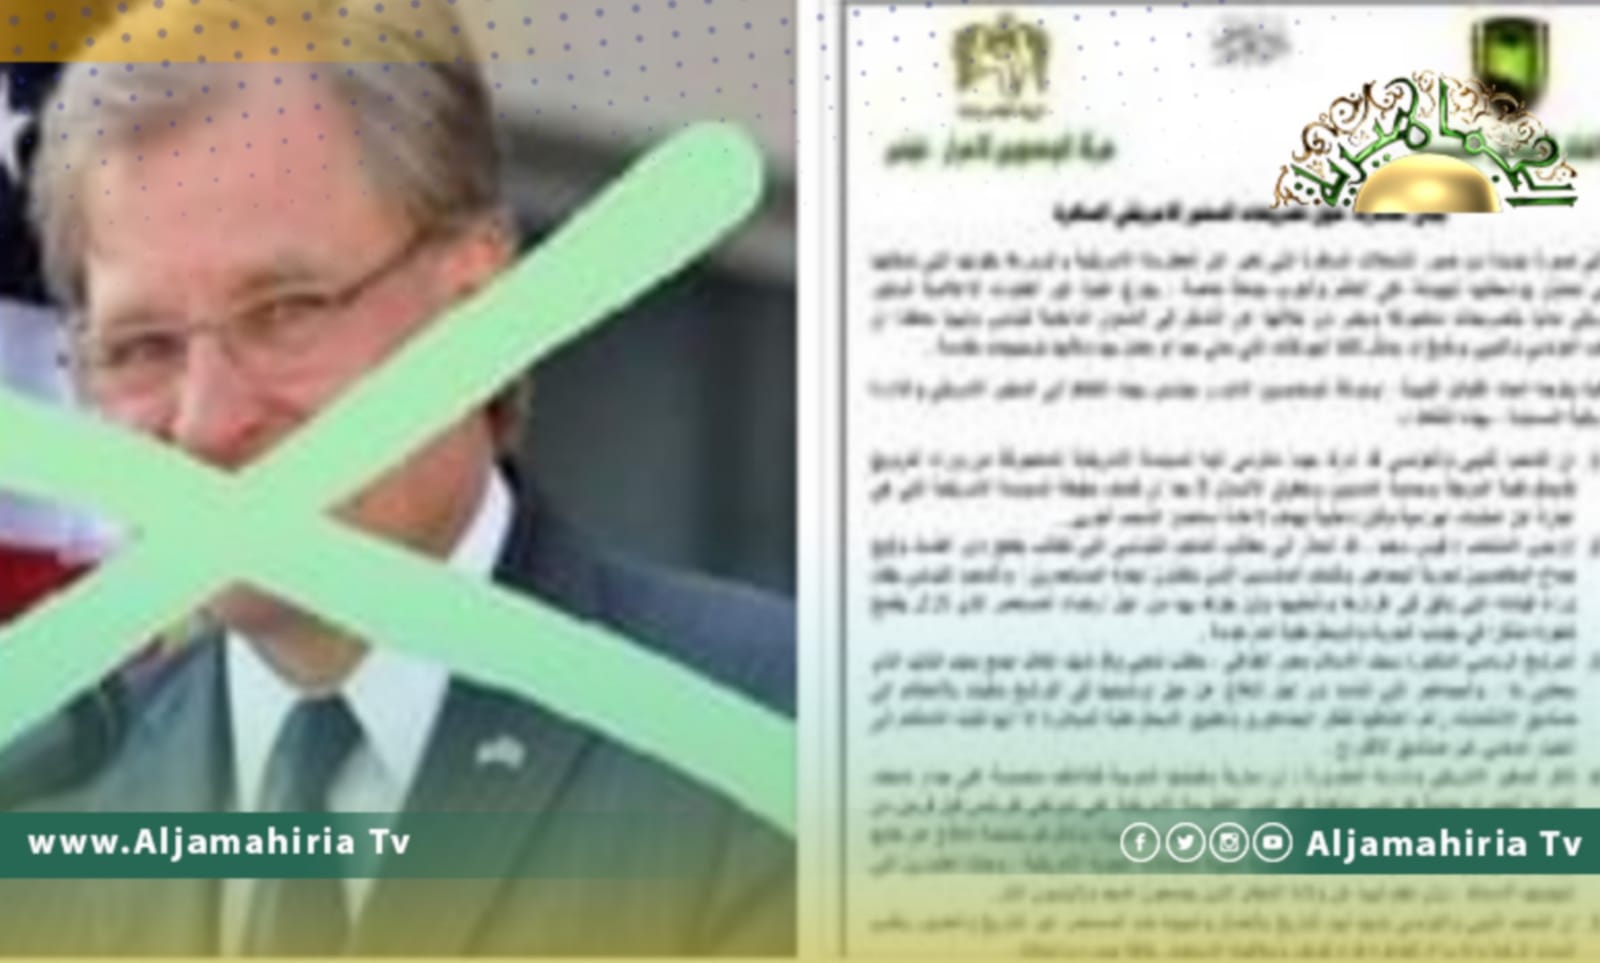 اتحاد القبائل الليبية يرد على السفير الأمريكي: سيف الإسلام القذافي مطلب شعبي